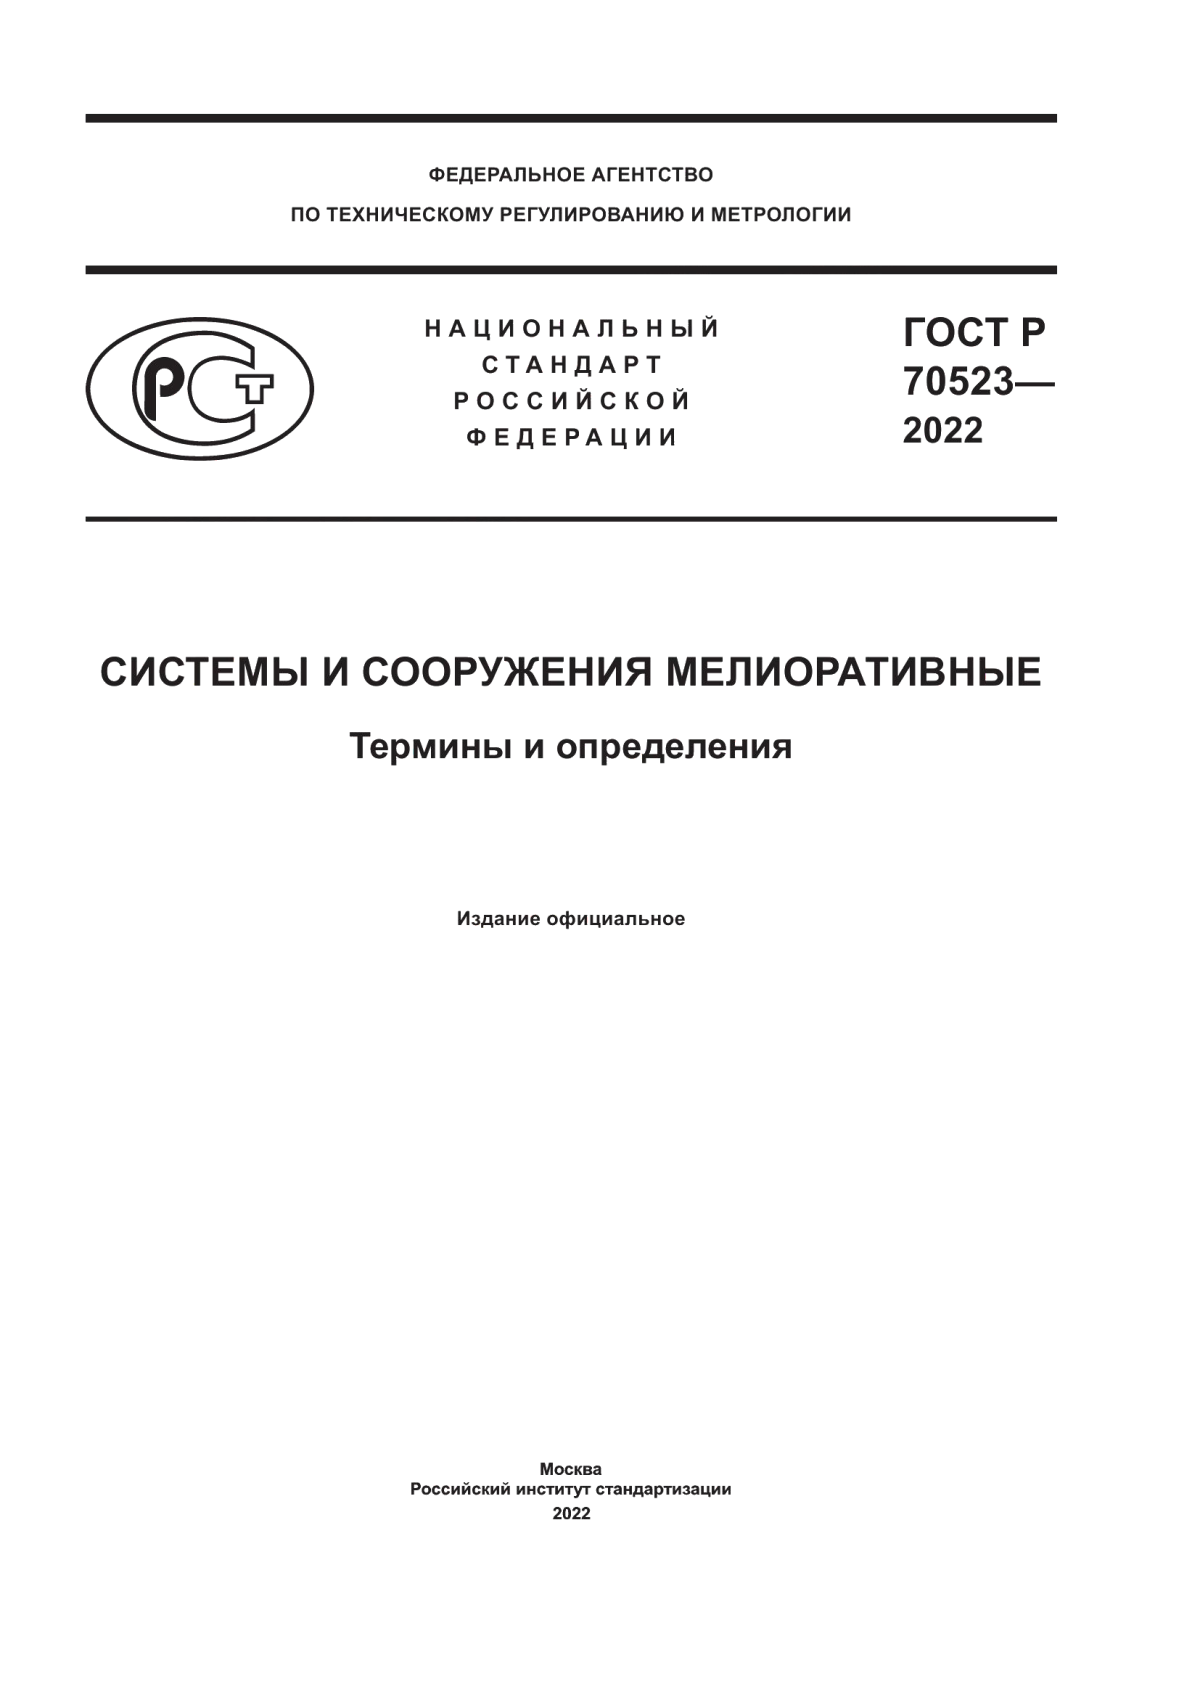 ГОСТ Р 70523-2022 Системы и сооружения мелиоративные. Термины и определения